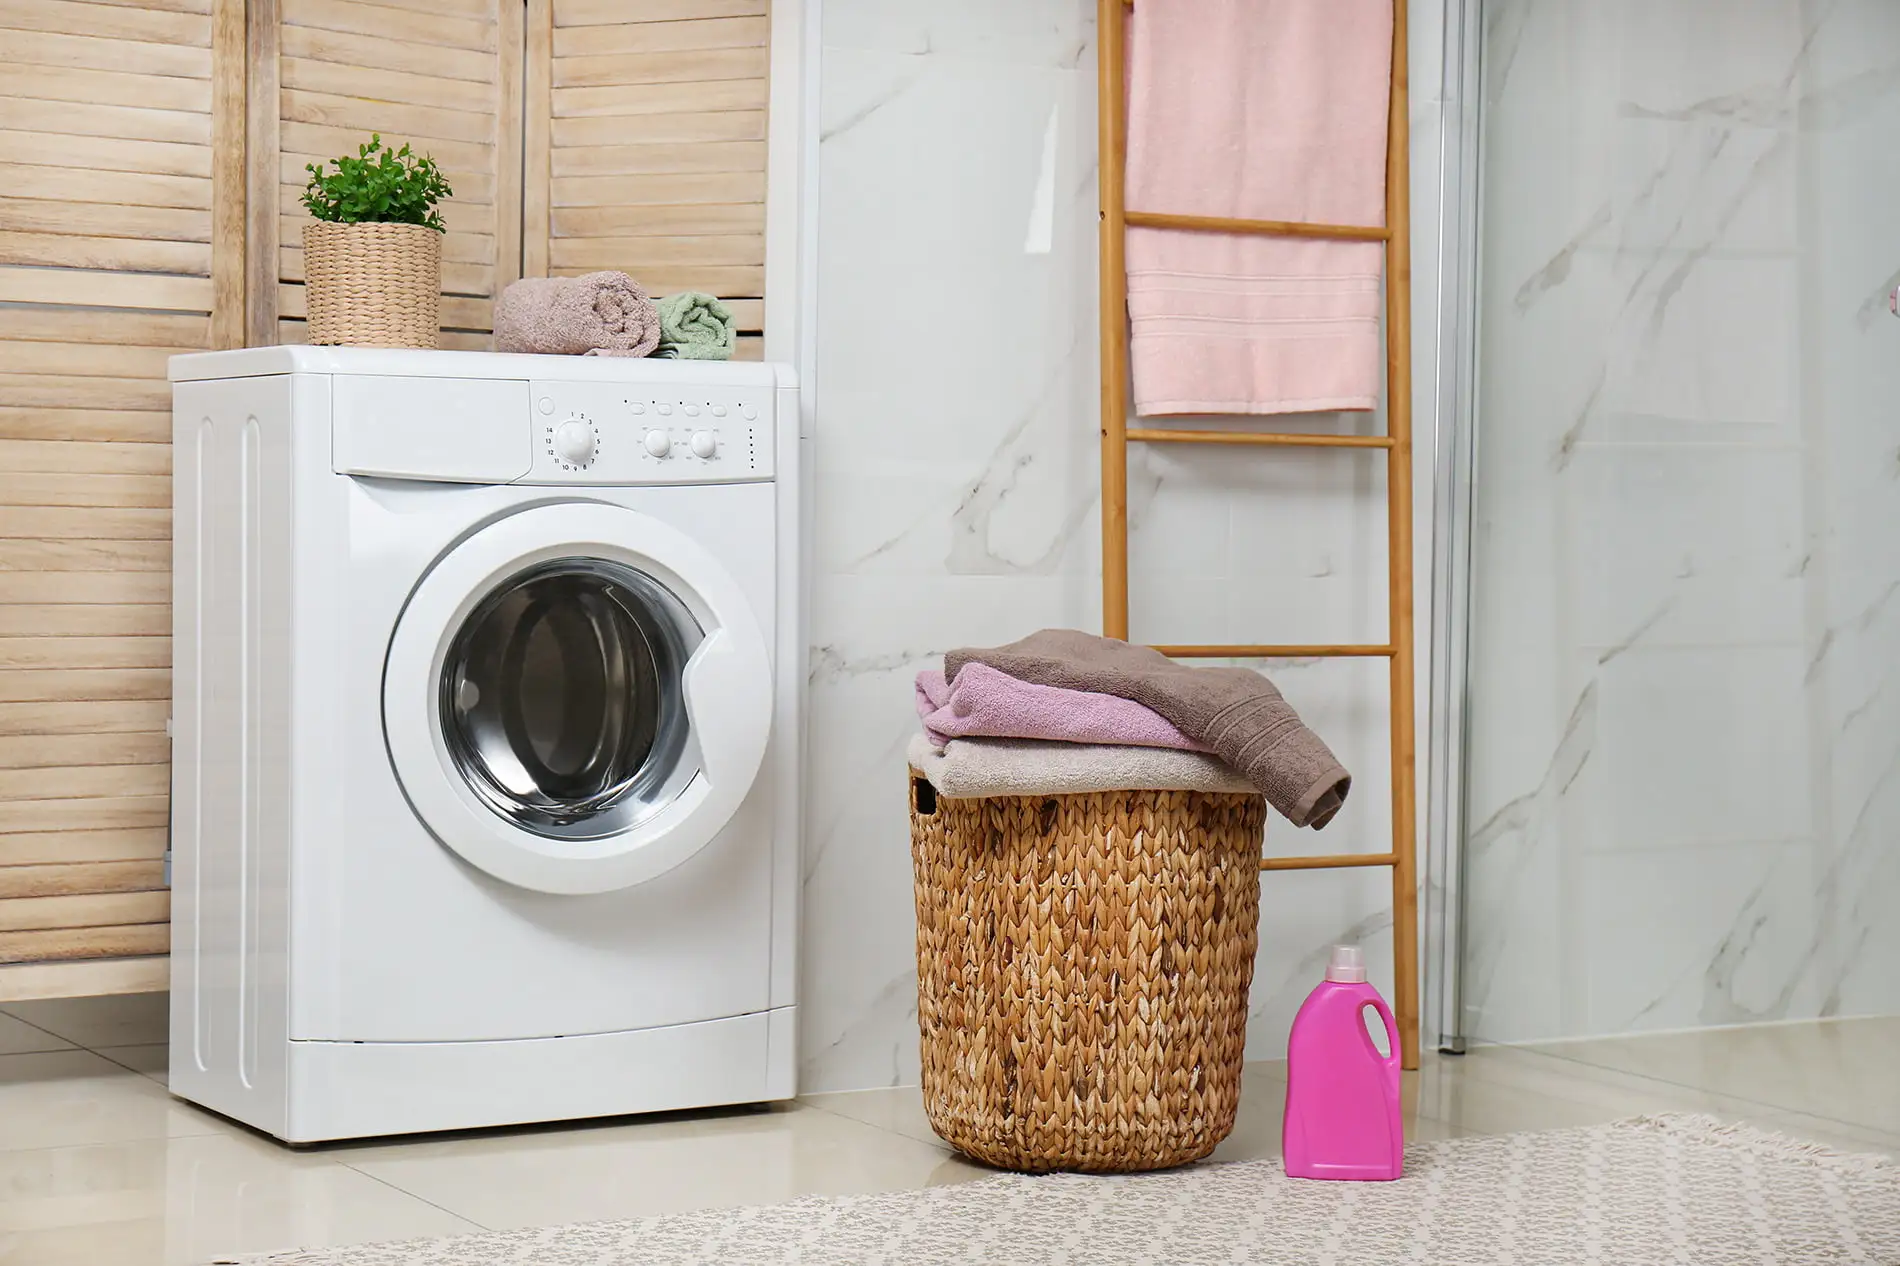 Les rideaux peuvent-ils être lavés dans la machine à laver ?